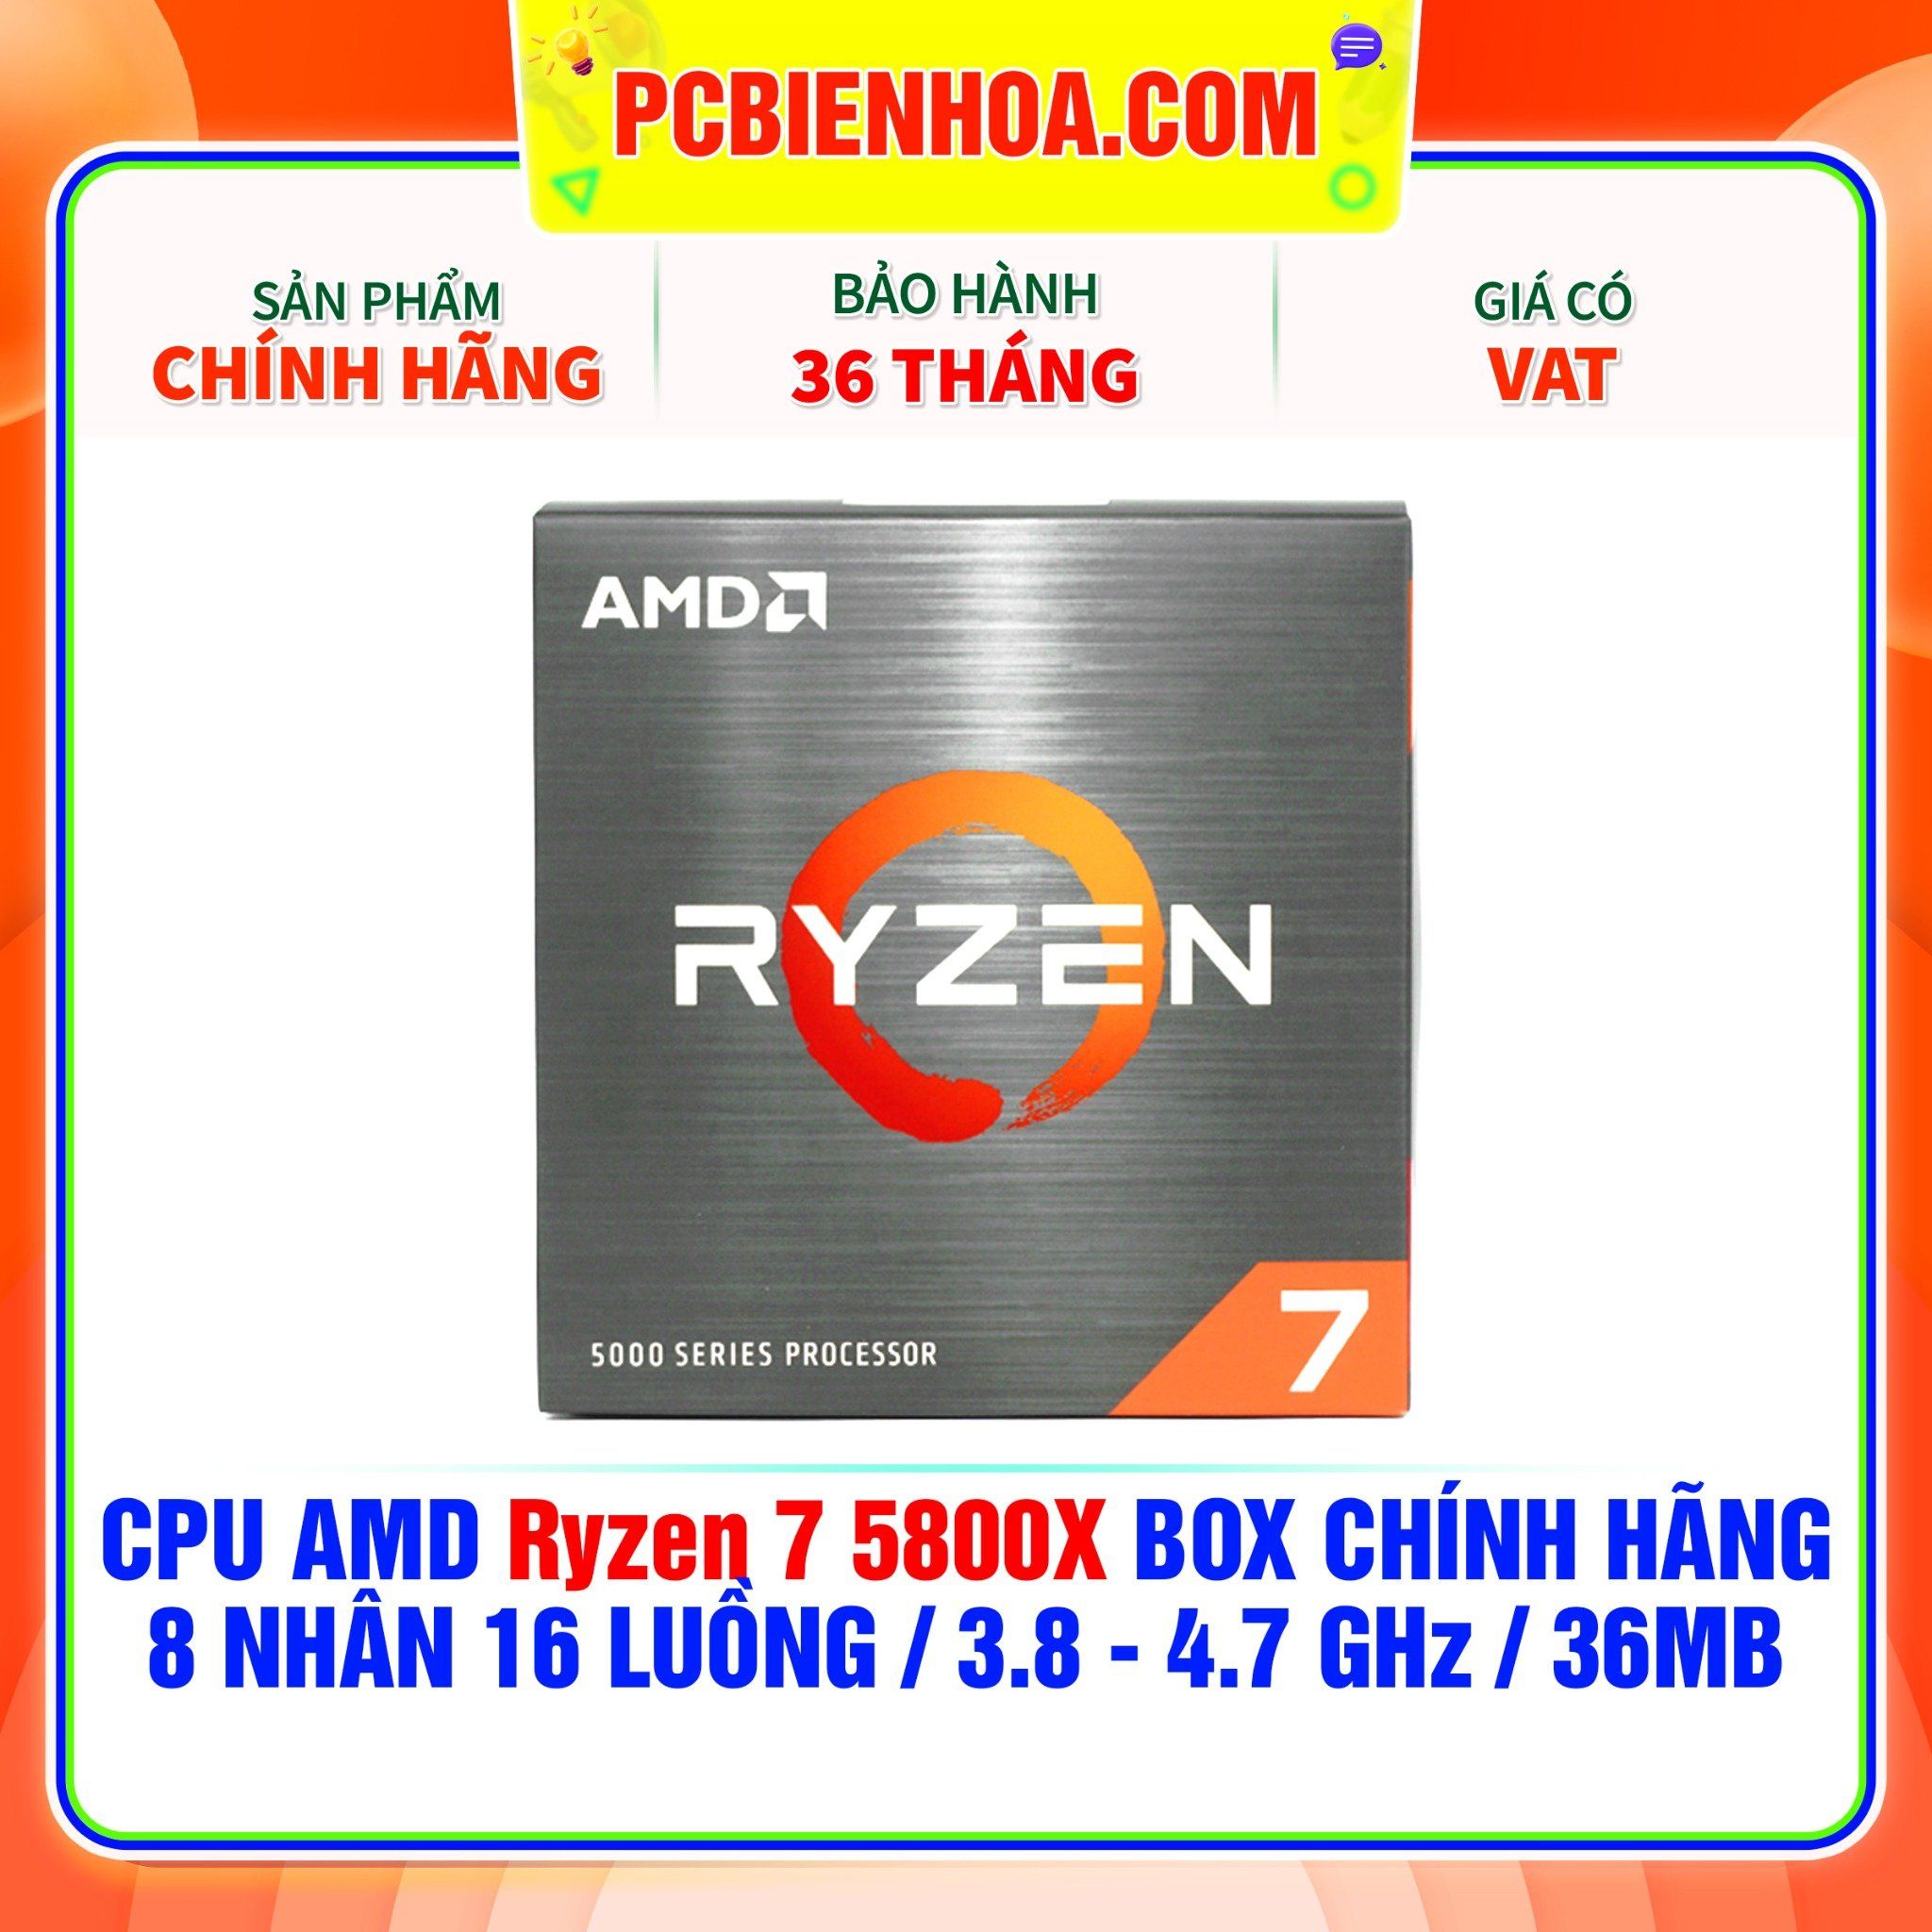  CPU AMD Ryzen 7 5800X BOX CHÍNH HÃNG ( 8 NHÂN 16 LUỒNG / 3.8 - 4.7 GHz / 36MB ) 